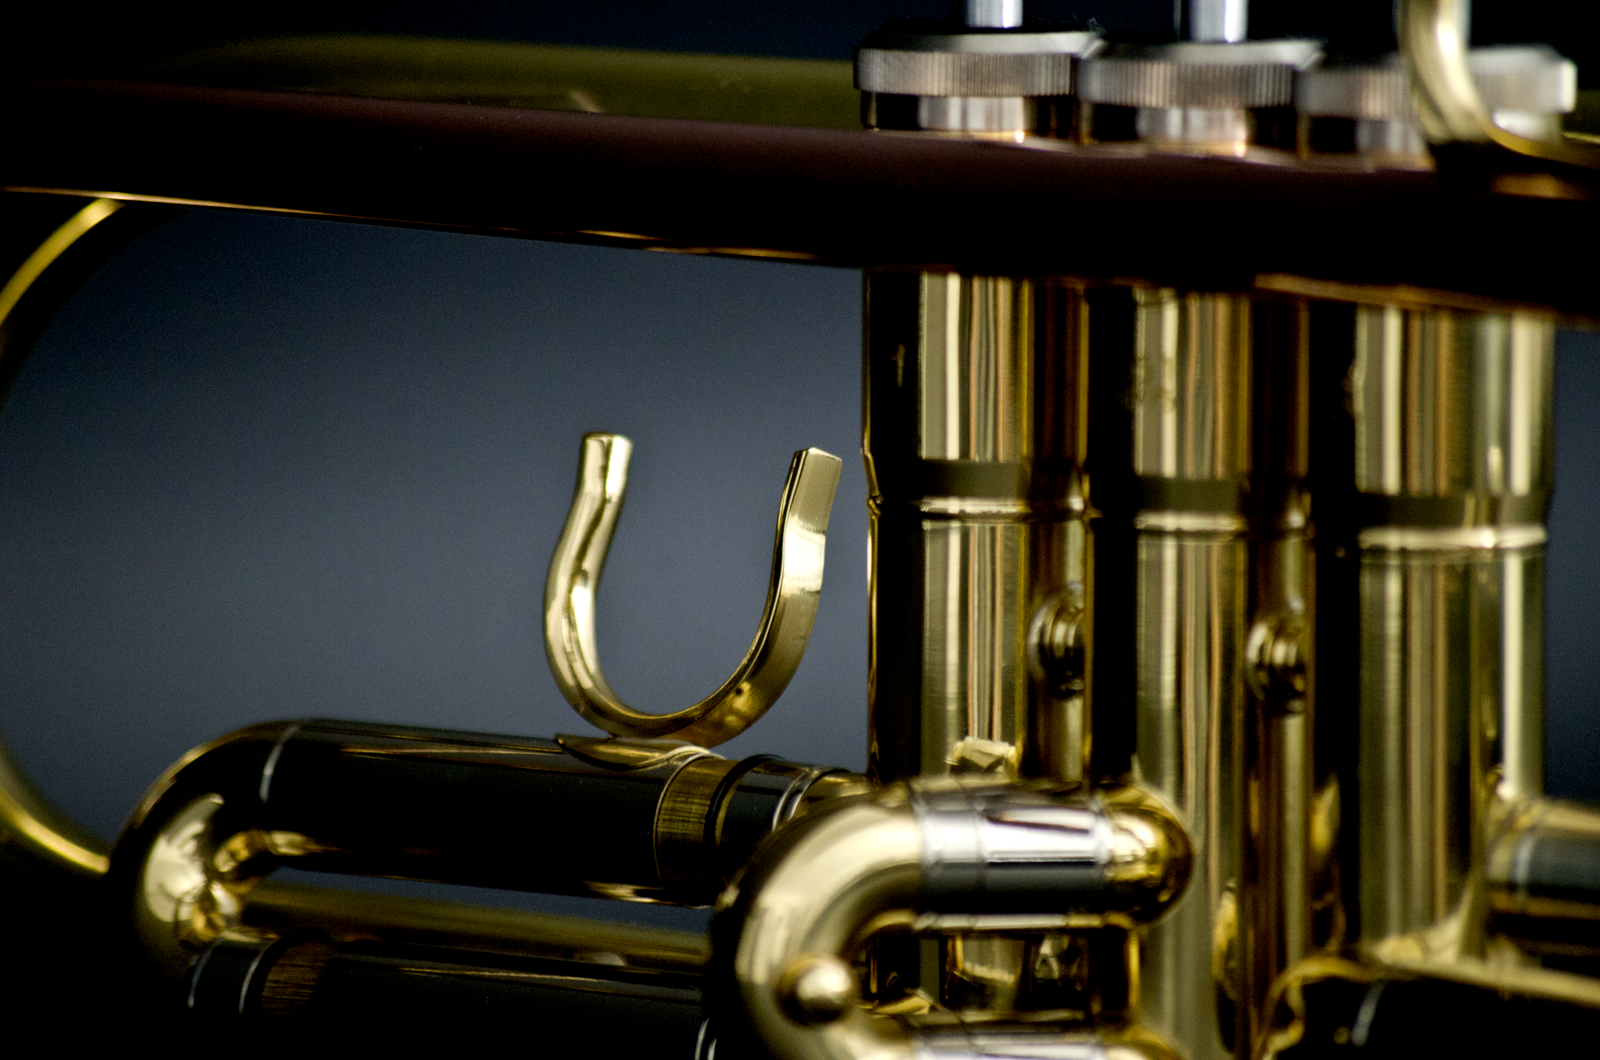 John Packer JP051 Bb Trumpet